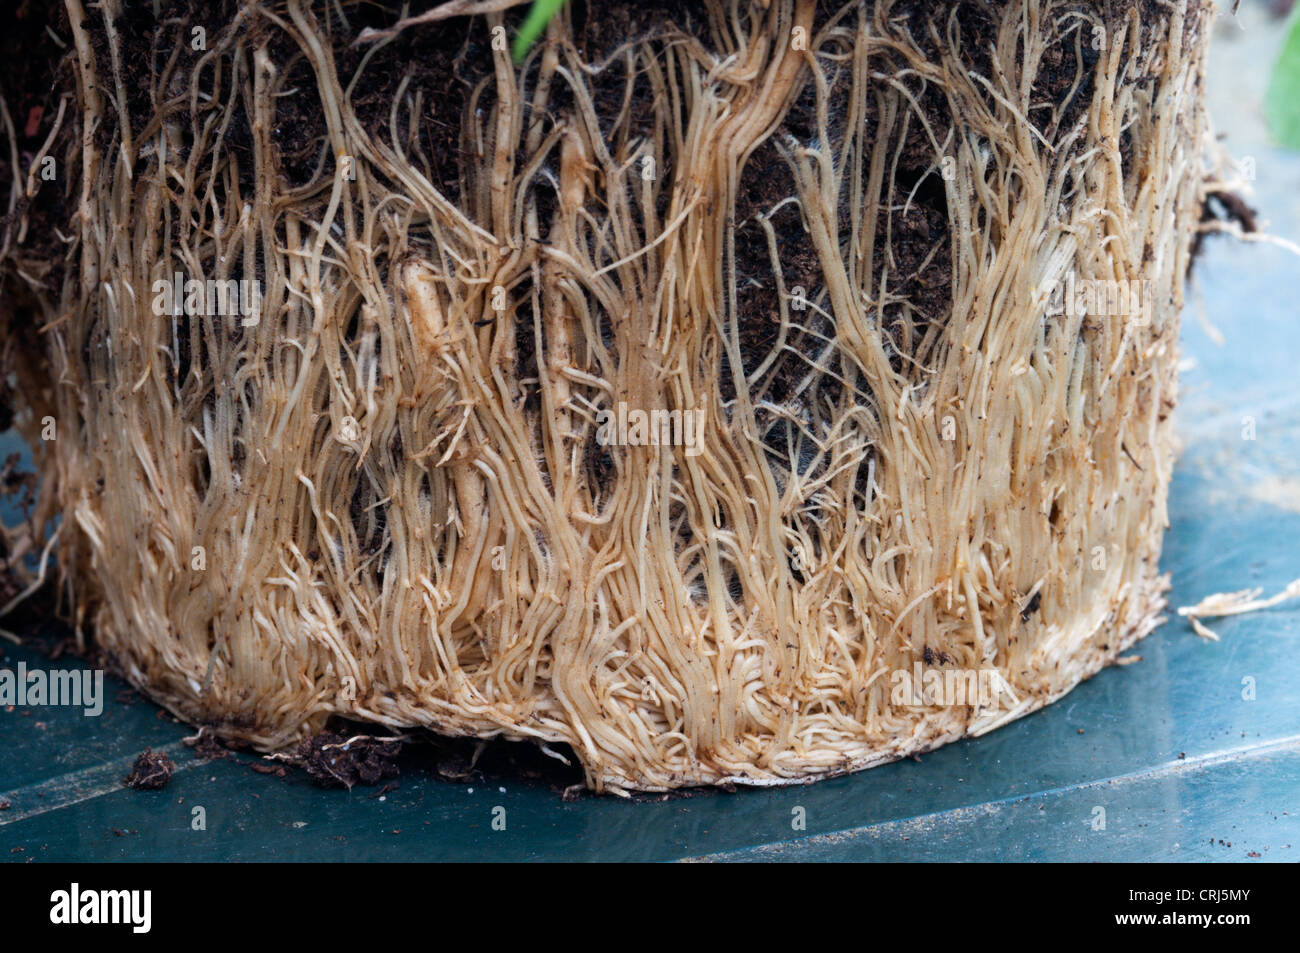 Eine Osteospermum Pflanze mit Wurzeln, die Topf-gebundenen geworden und die Verpflanzung jetzt braucht. Stockfoto